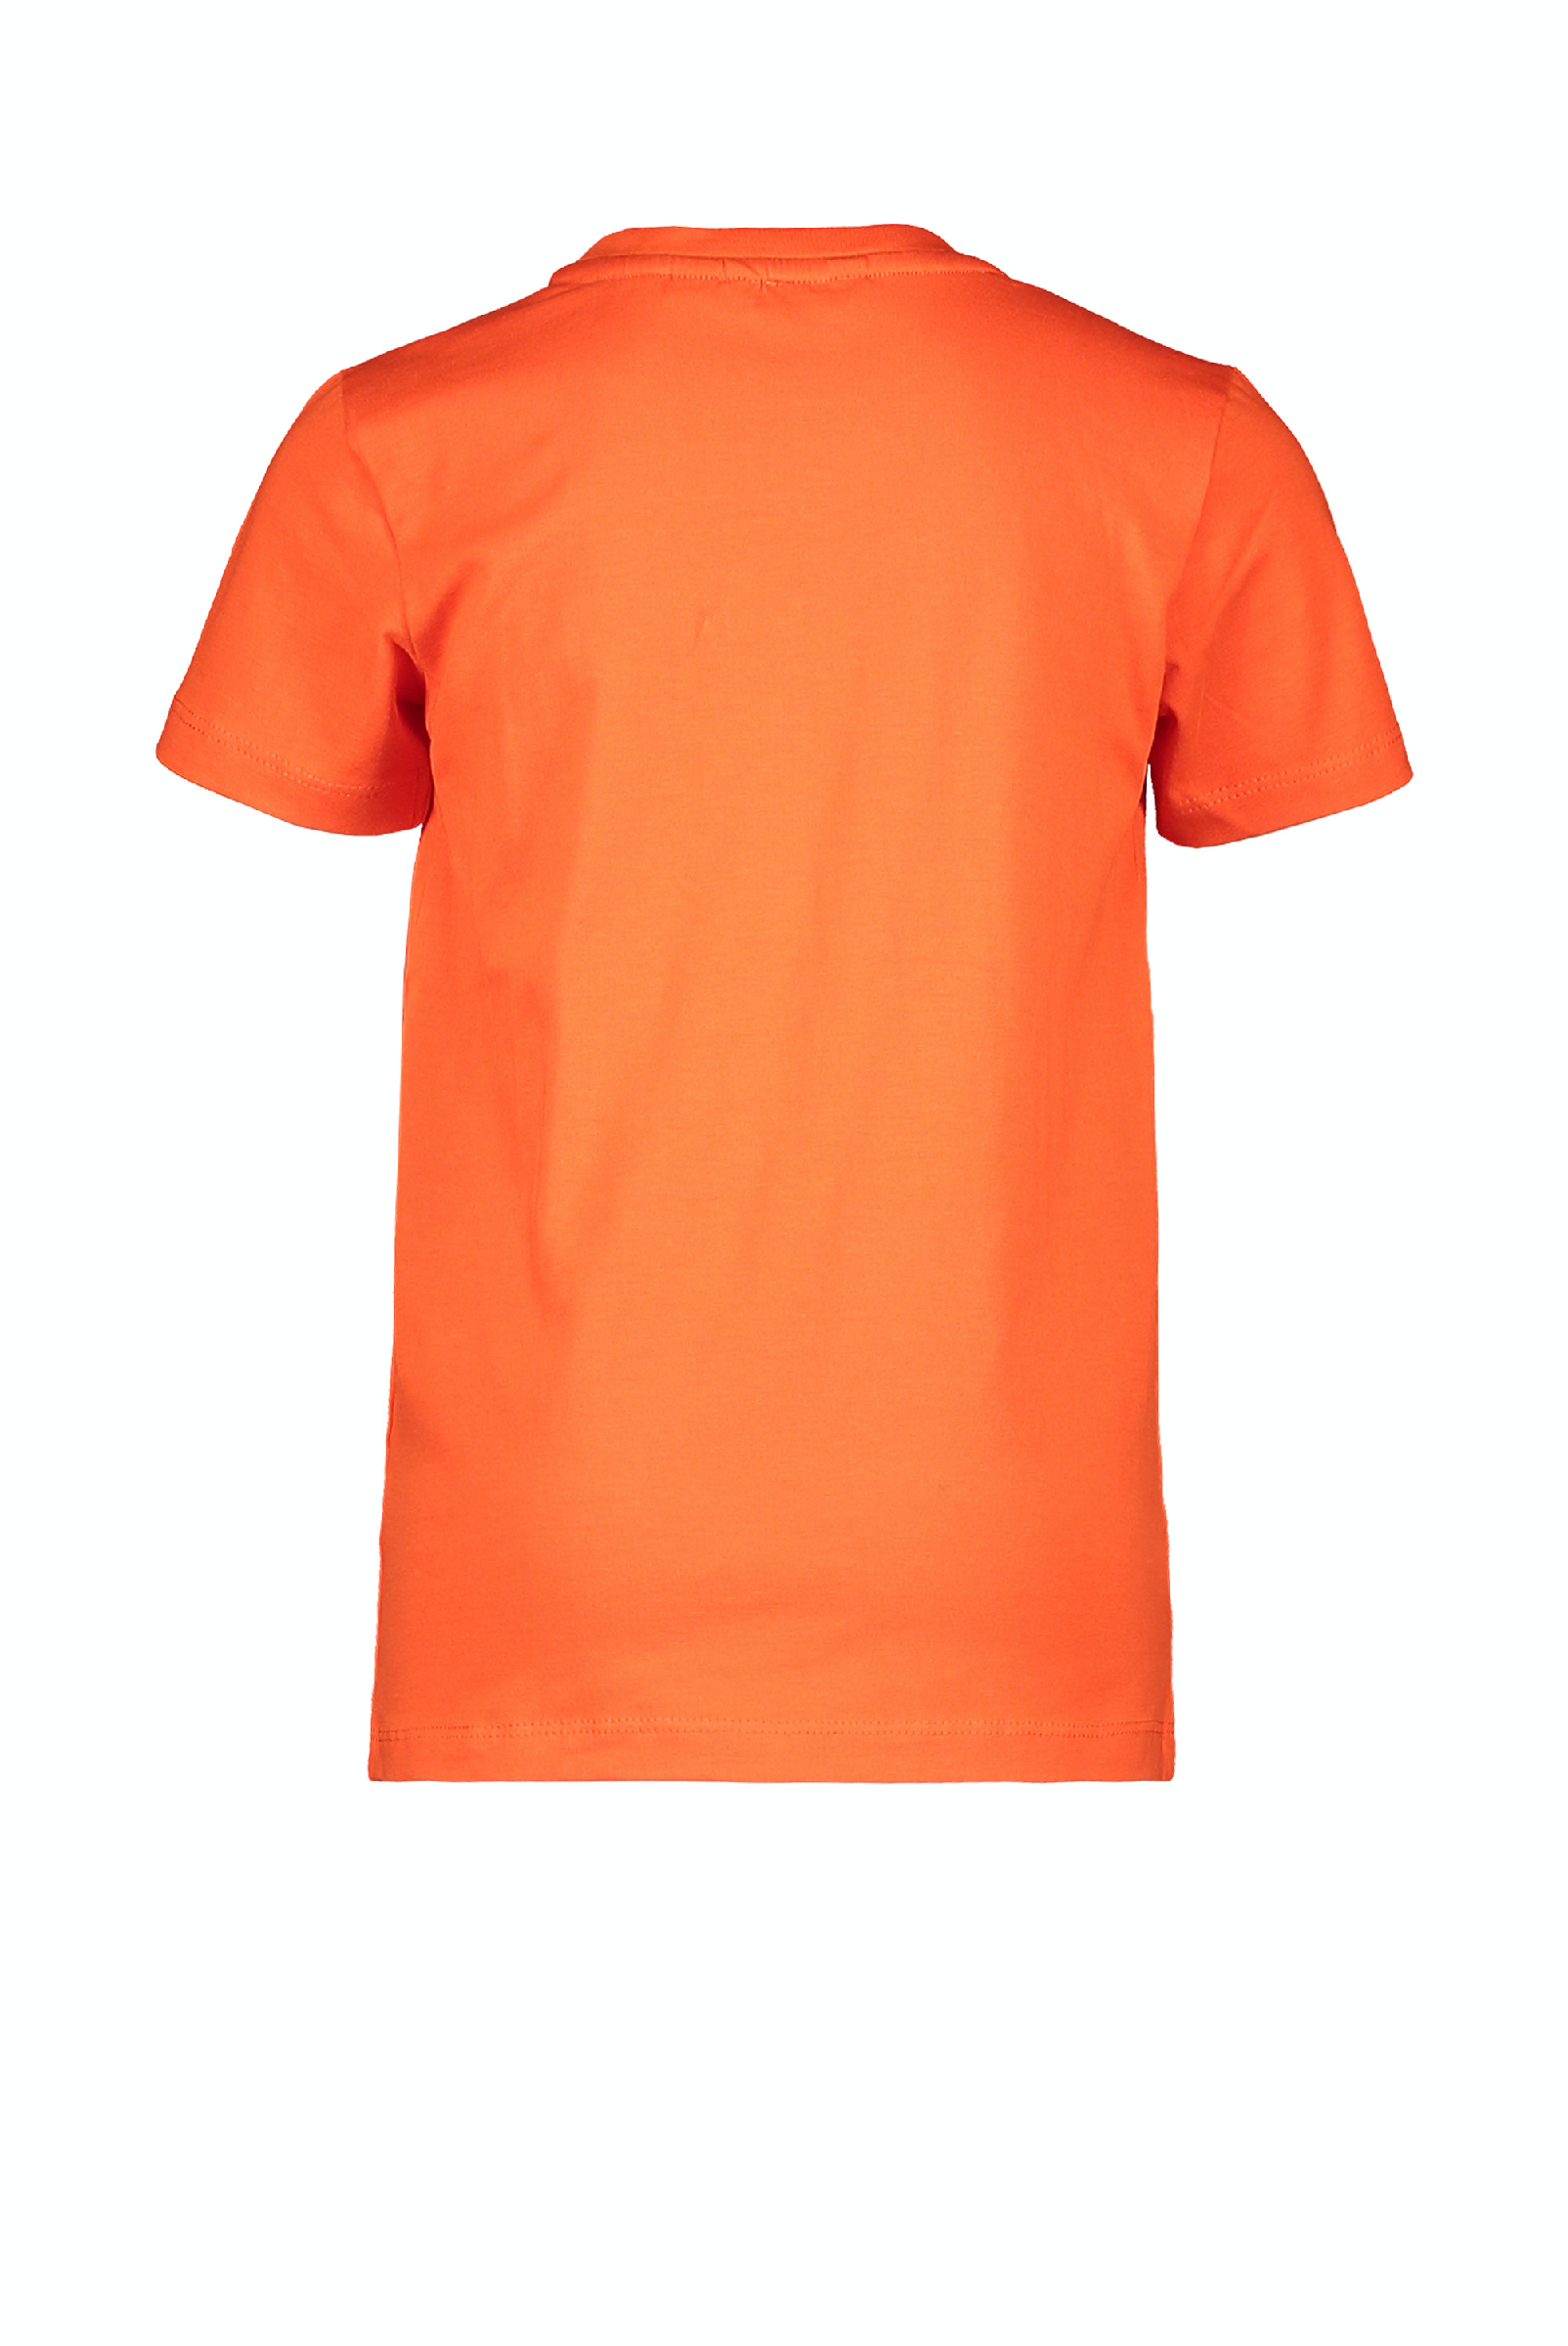 Jongens MT t-shirt chestprint van Moodstreet in de kleur Sporty Orange in maat 110, 116.